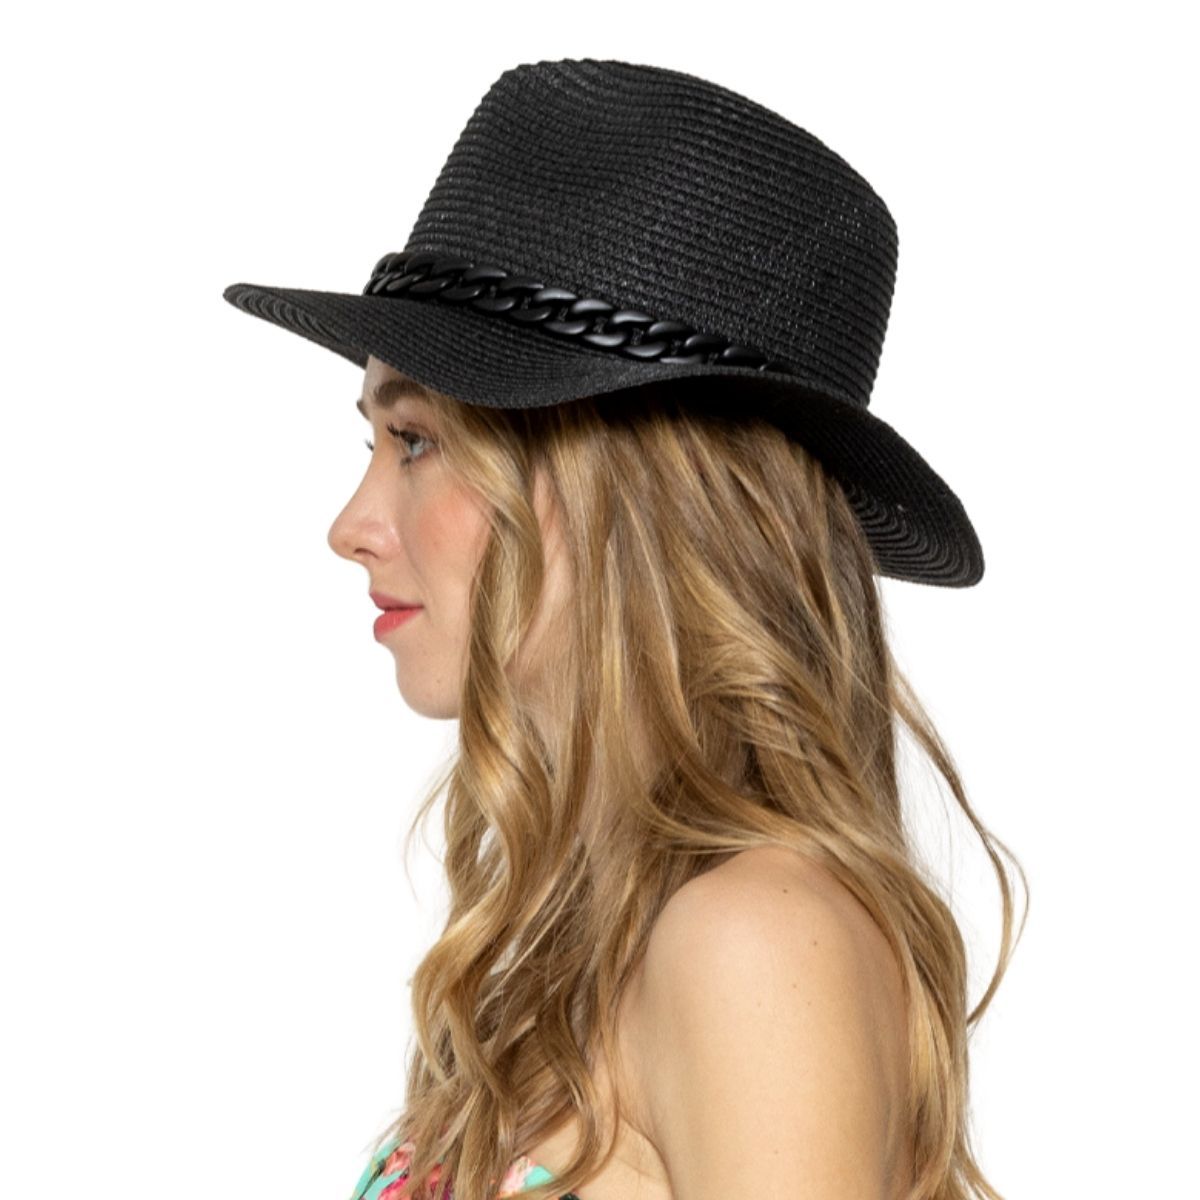 Black Chain Band Panama Hat